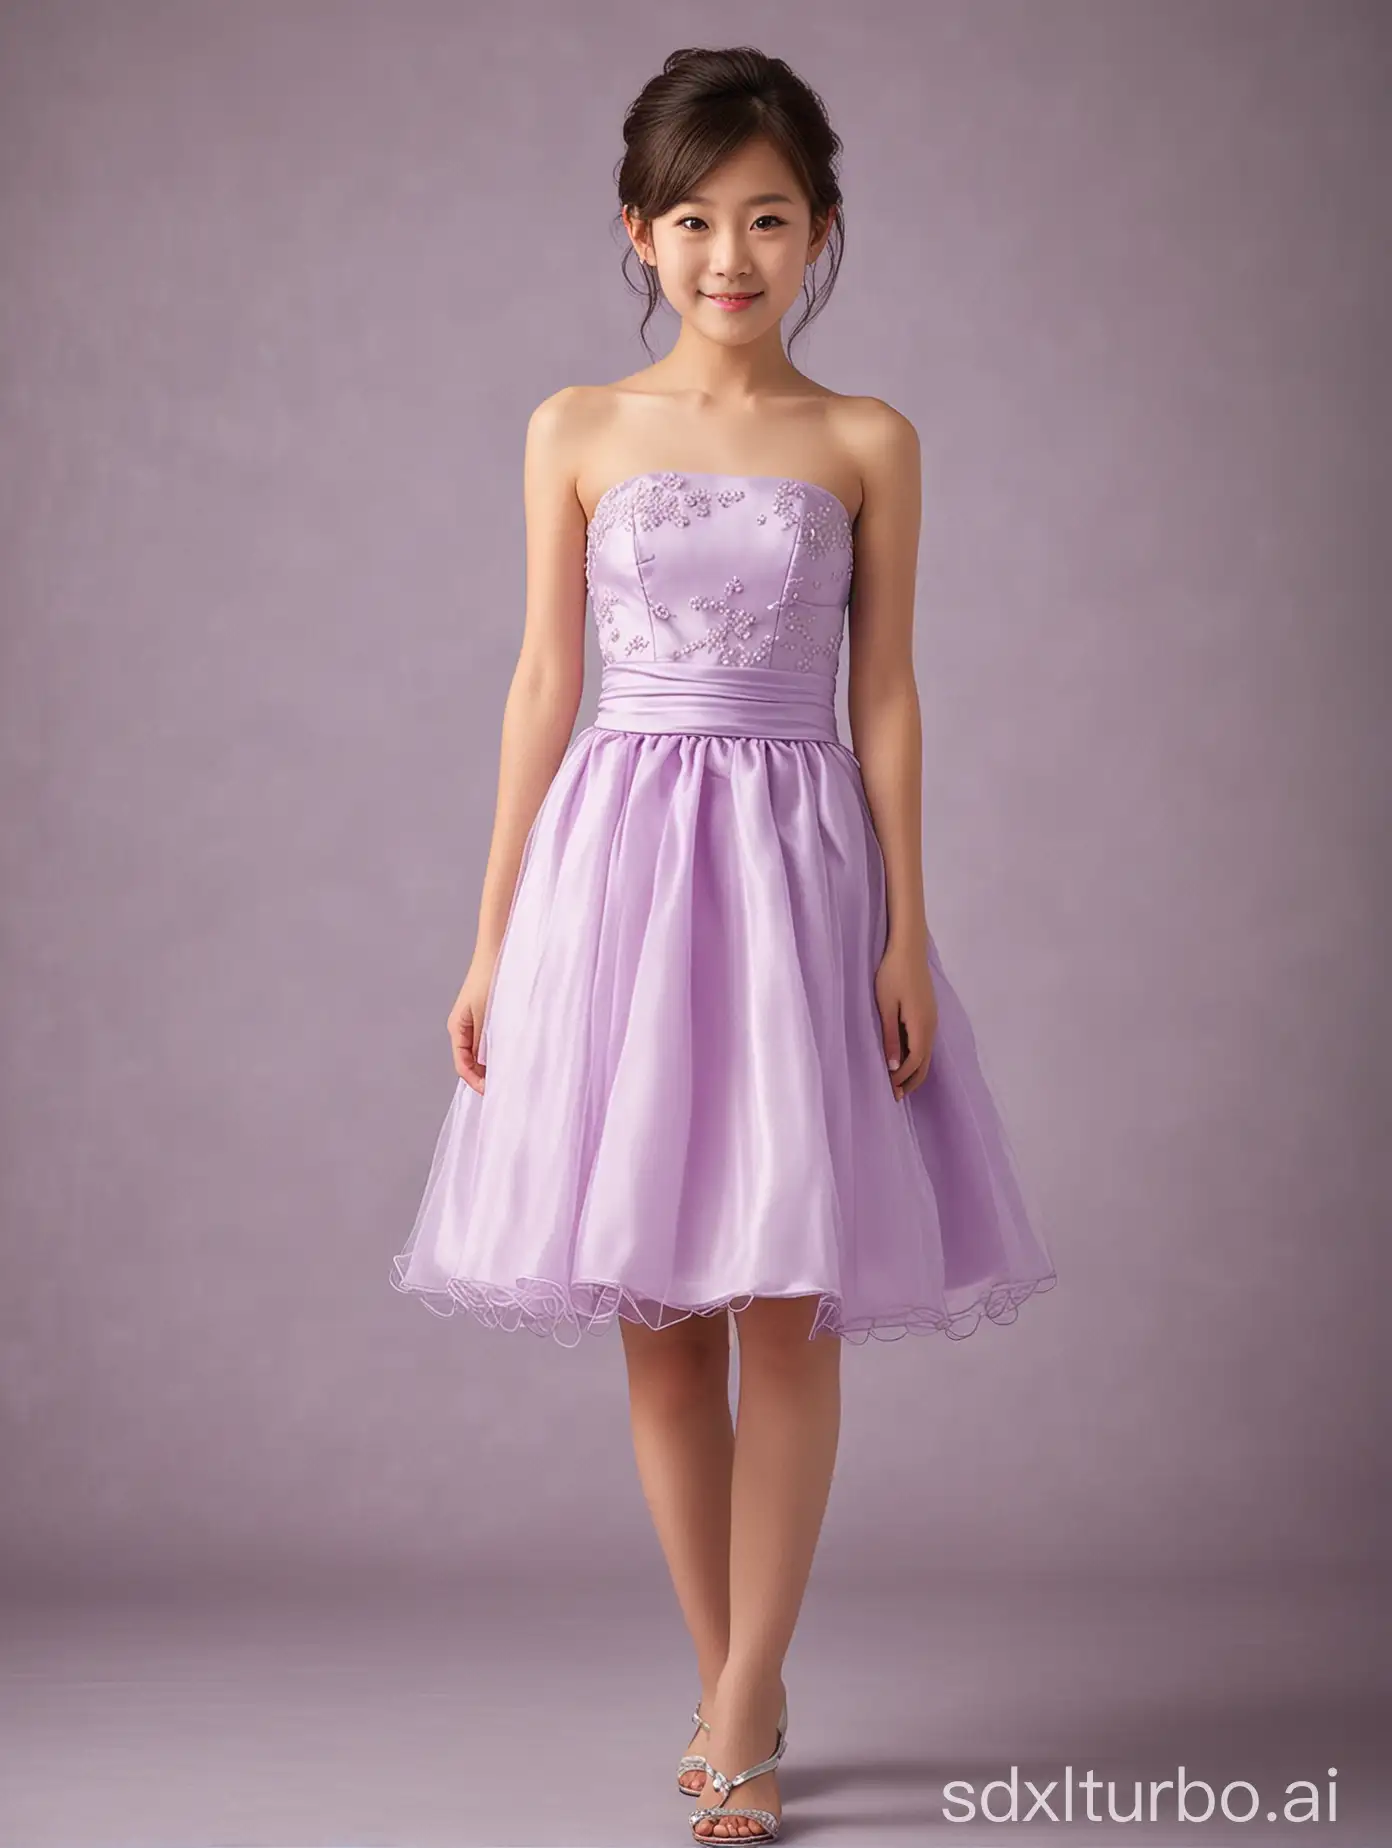 Elegant-Japanese-Girl-in-Light-Purple-Strapless-Short-Wedding-Dress